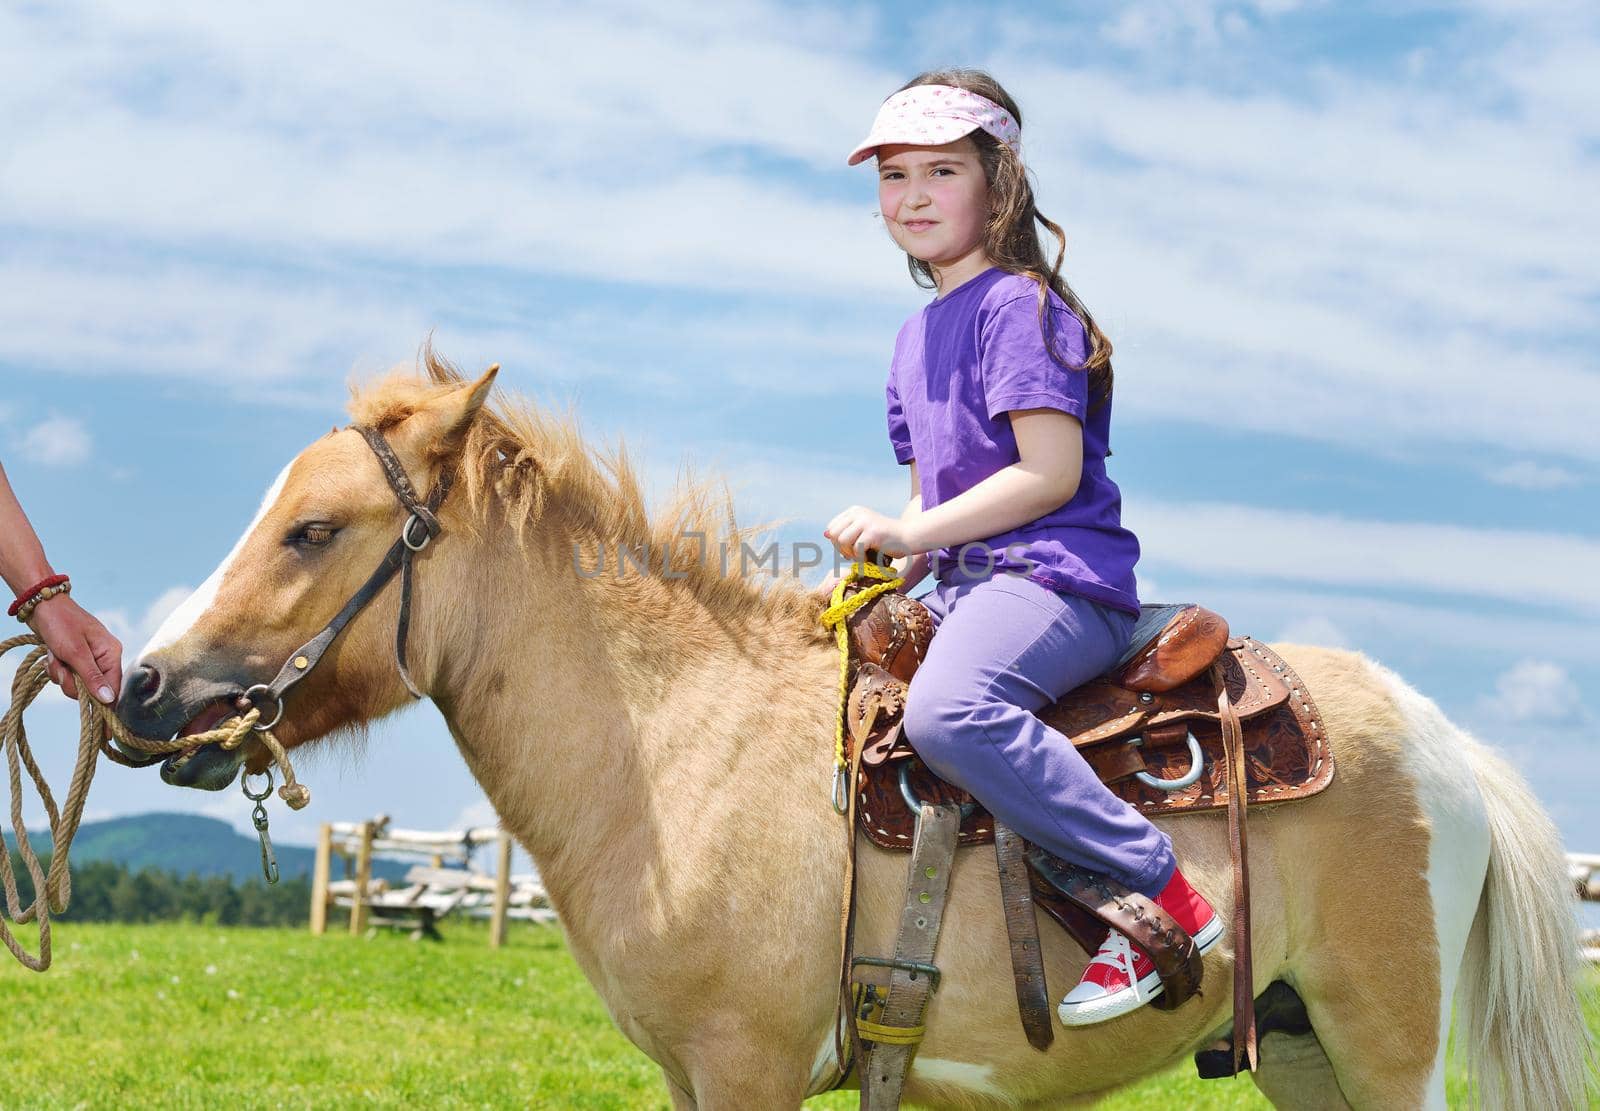 child ride pony by dotshock